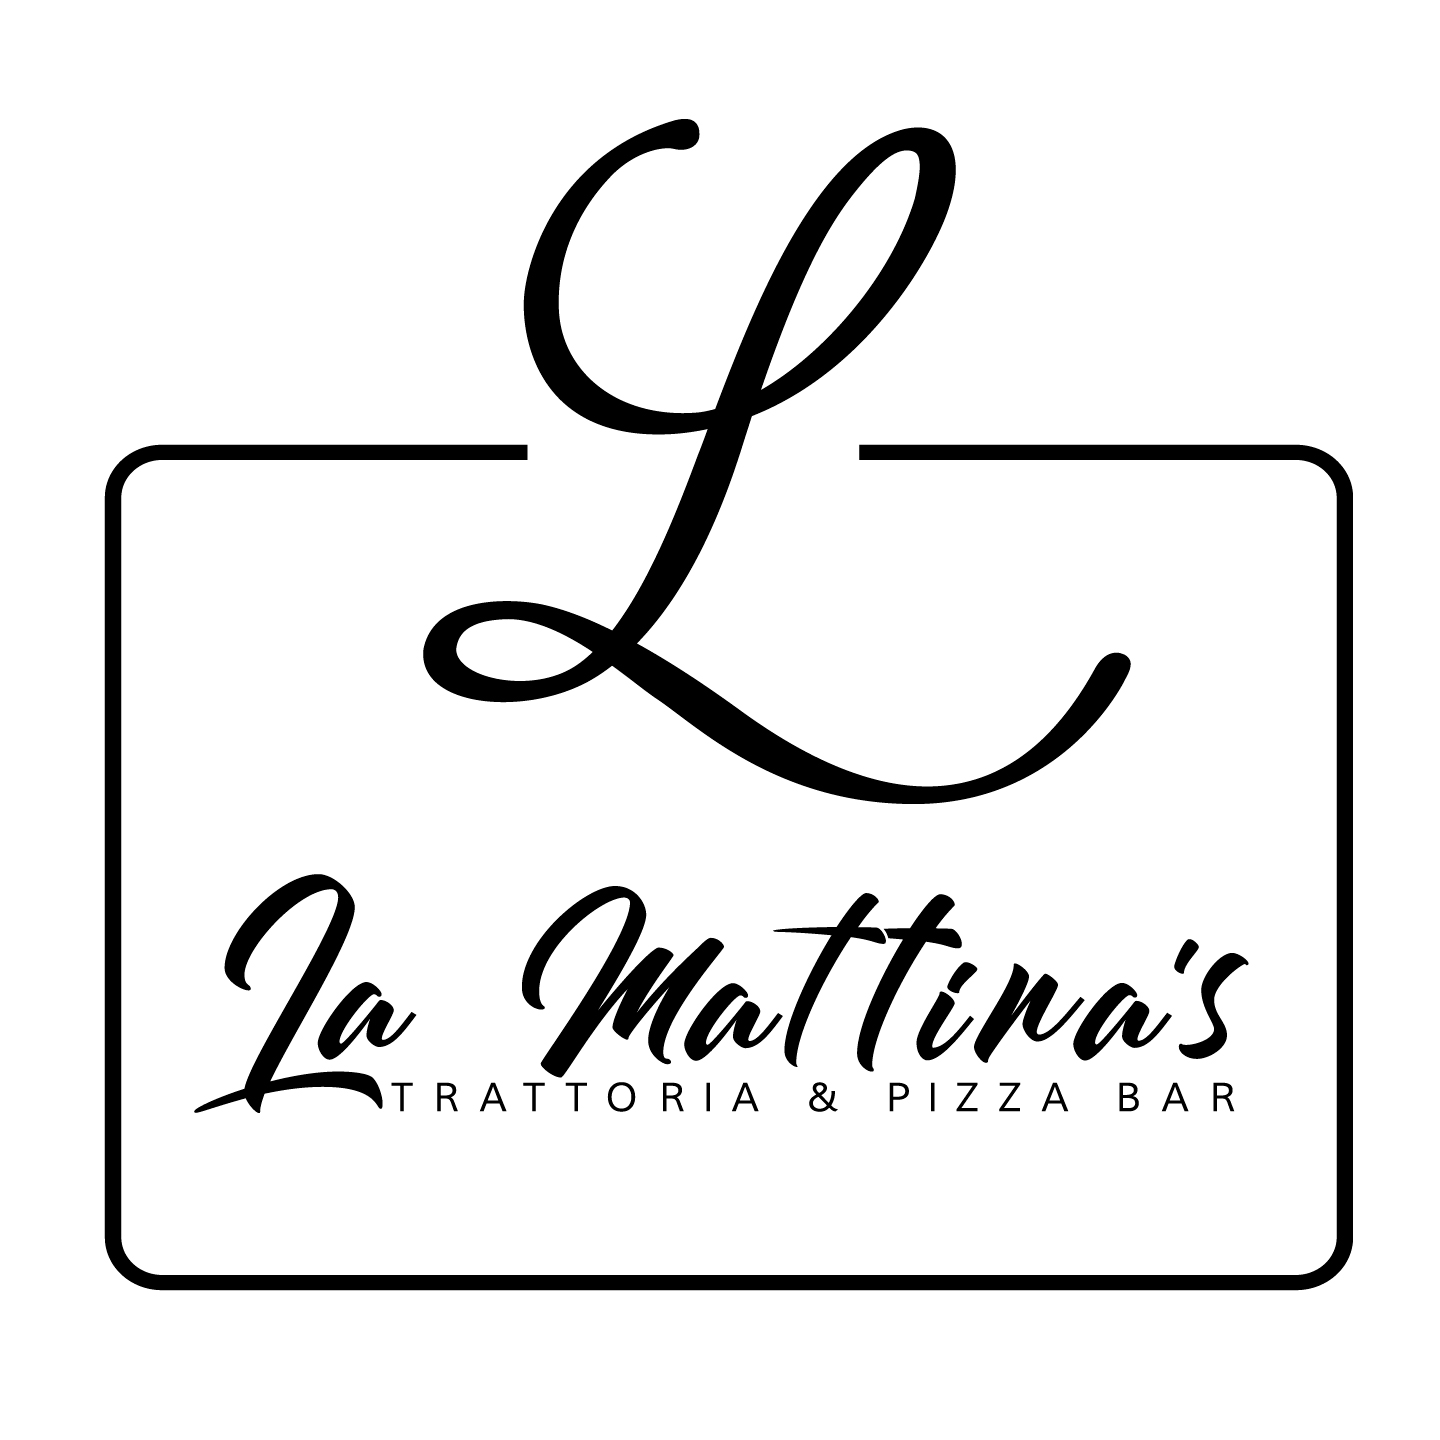 LaMattina’s Trattoria & Pizza Bar